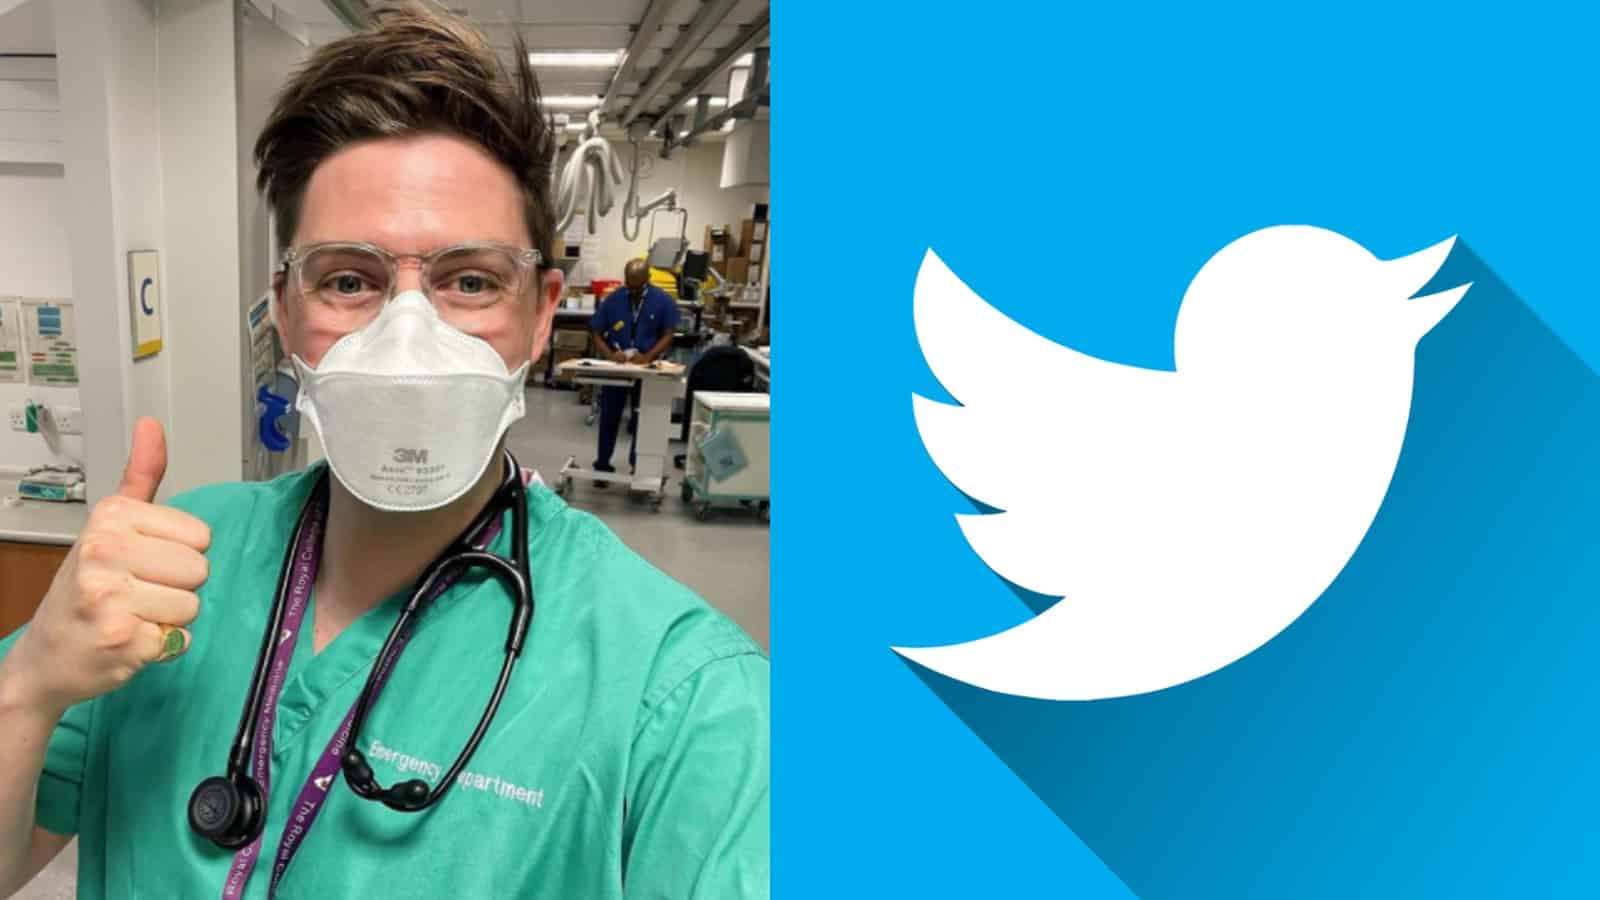 Dr Alex quits Twitter